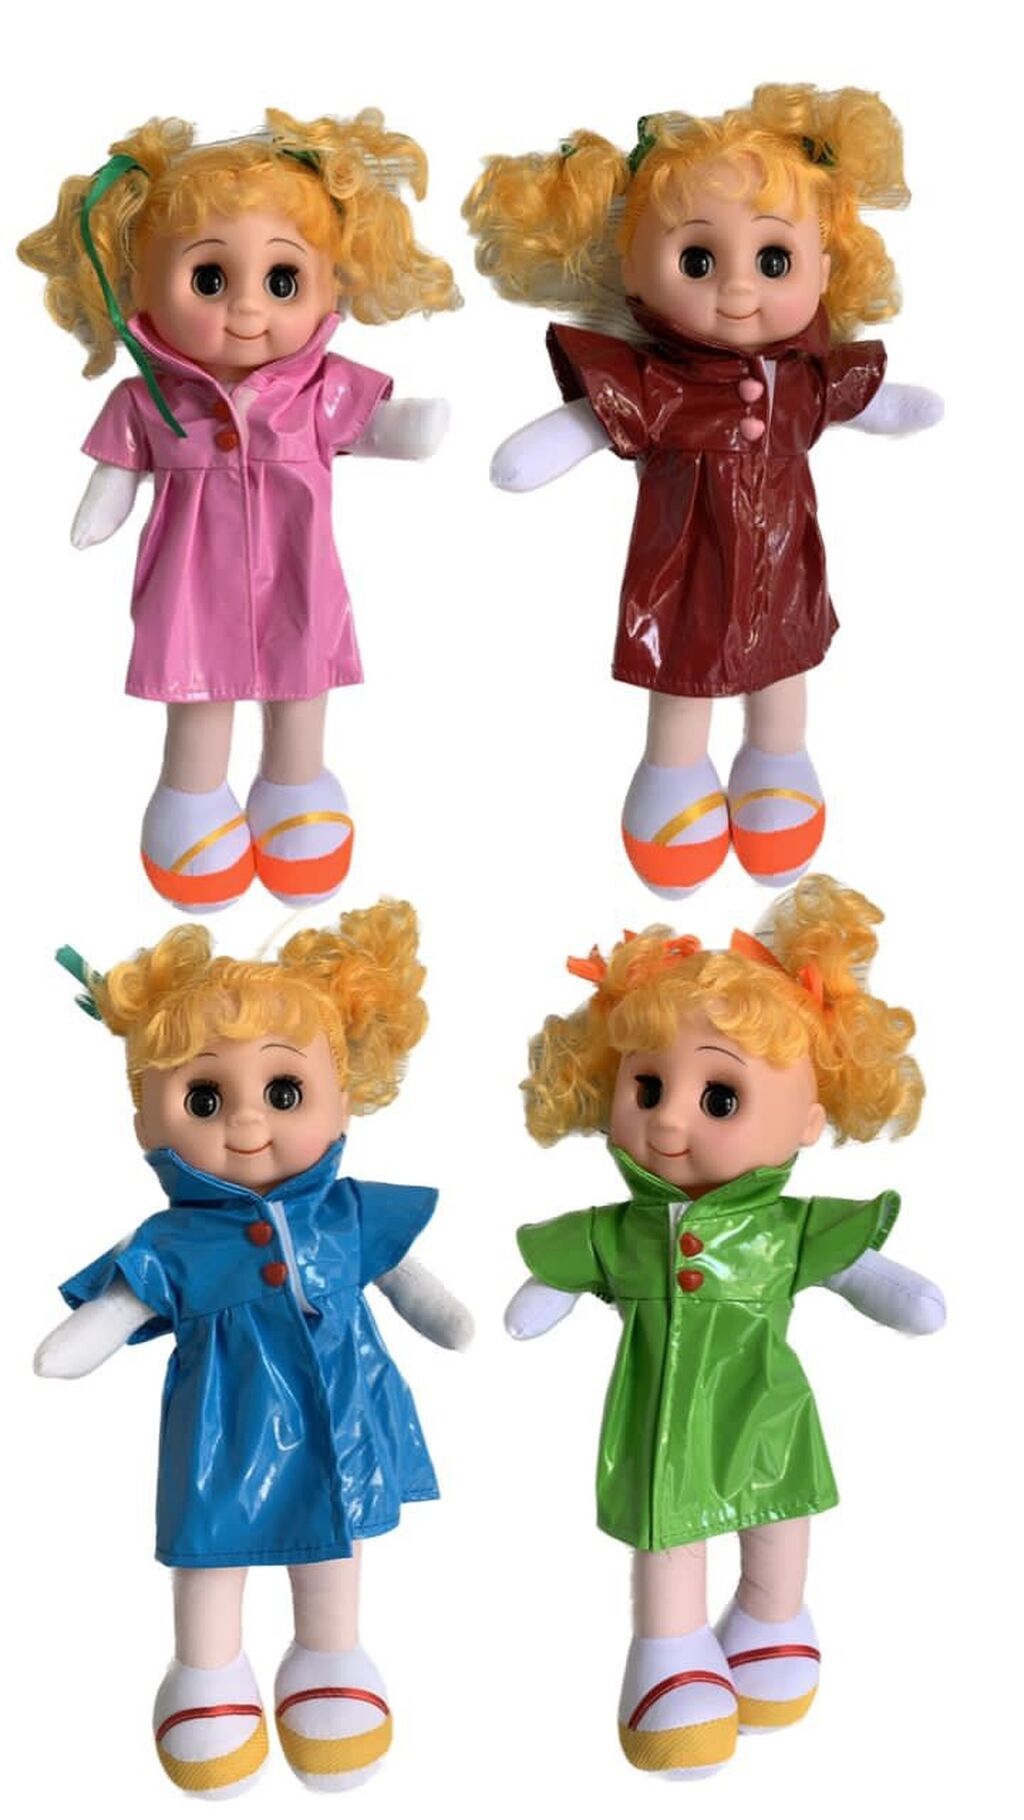 Мягкие игрушки куклы по низким оптовым ценам с доставкой по России